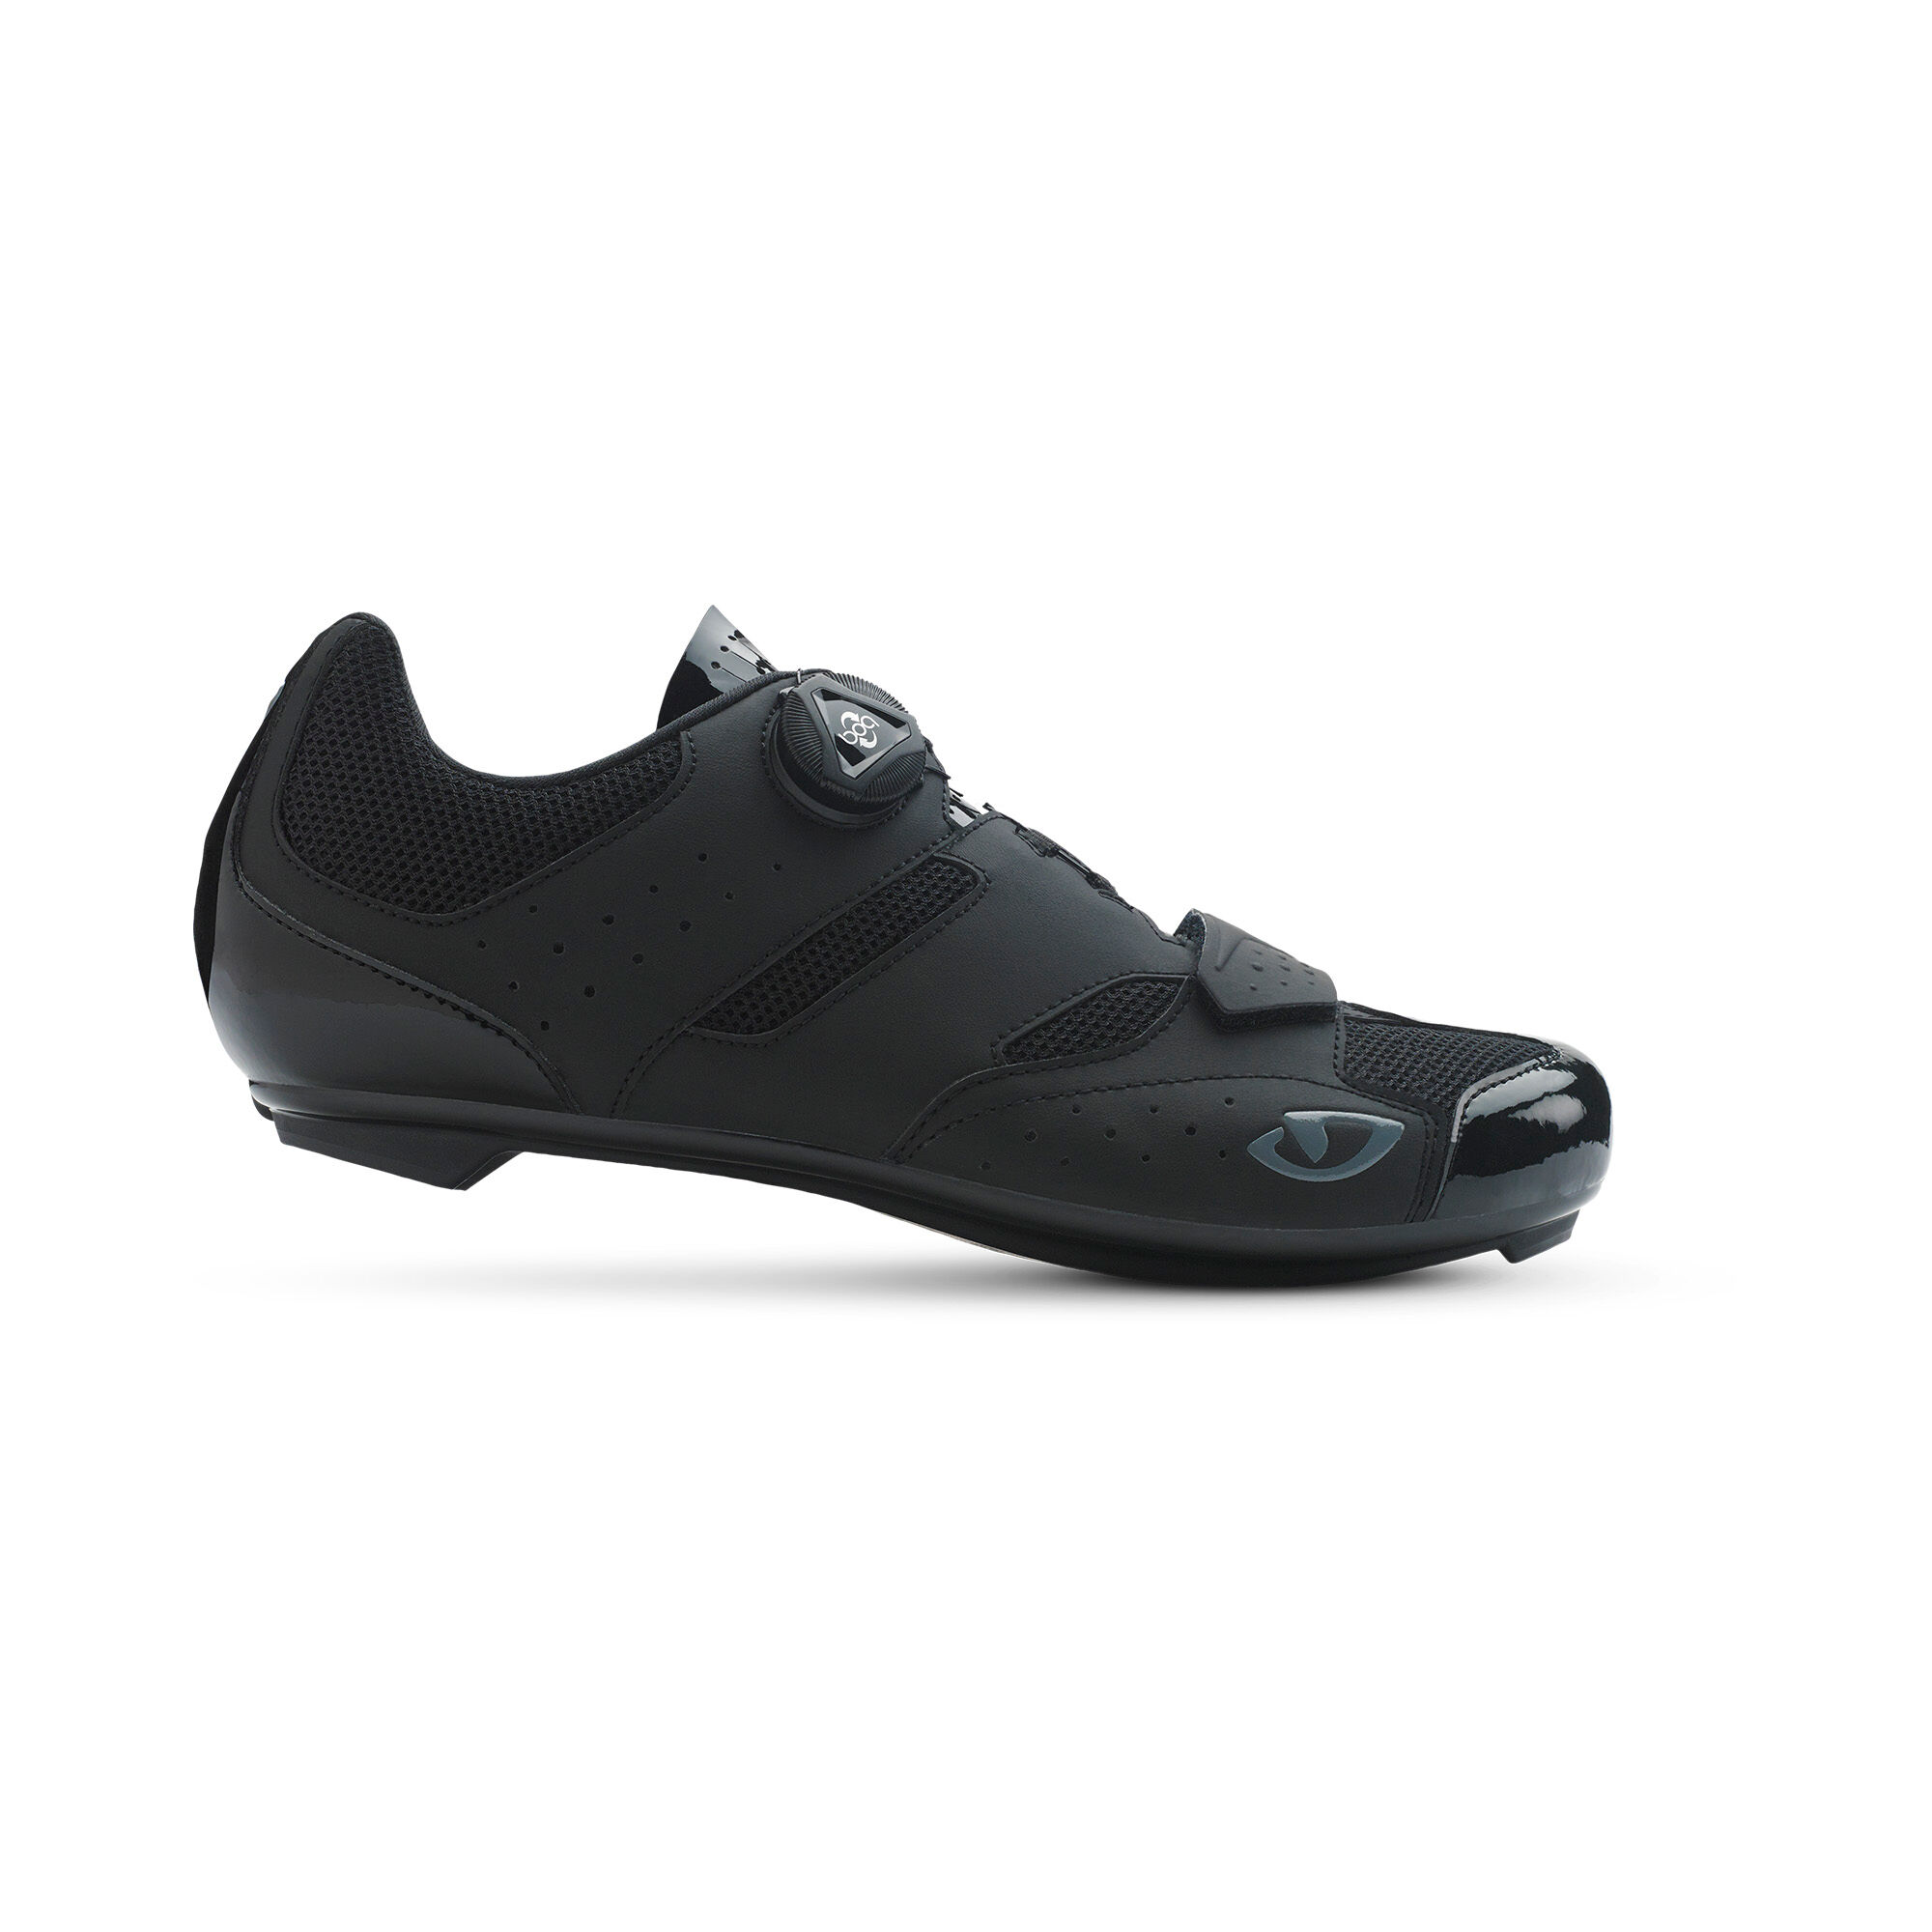 Giro Savix - Cycling shoes - Men's